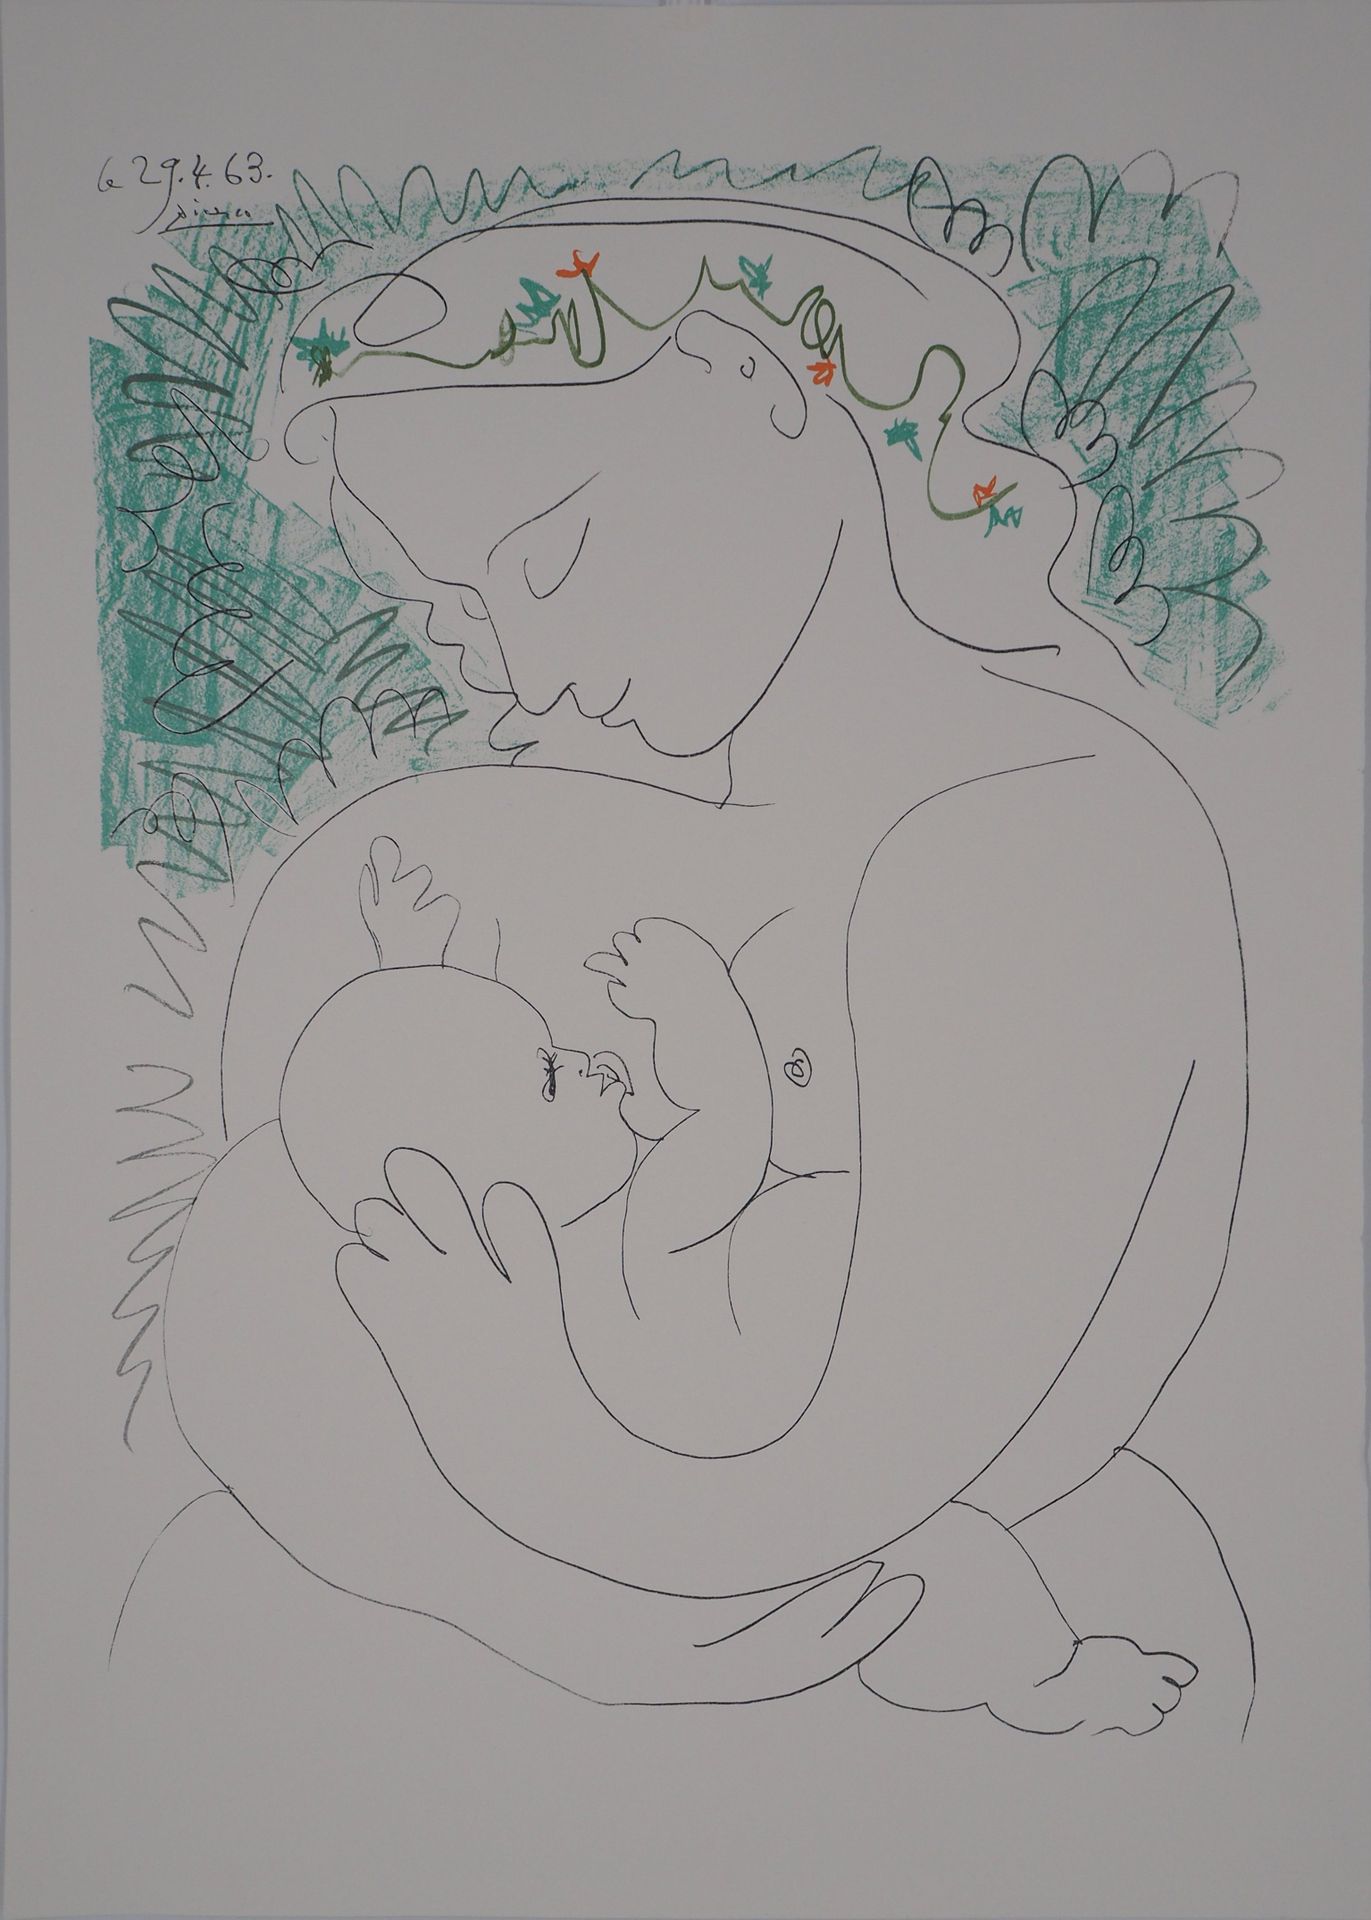 Pablo PICASSO 巴勃罗-皮卡索（后

孕妇，大号模型

牛皮纸上的彩色石版画

板块中的签名

板块中的日期为29-04-63

经S.P.A.D.&hellip;